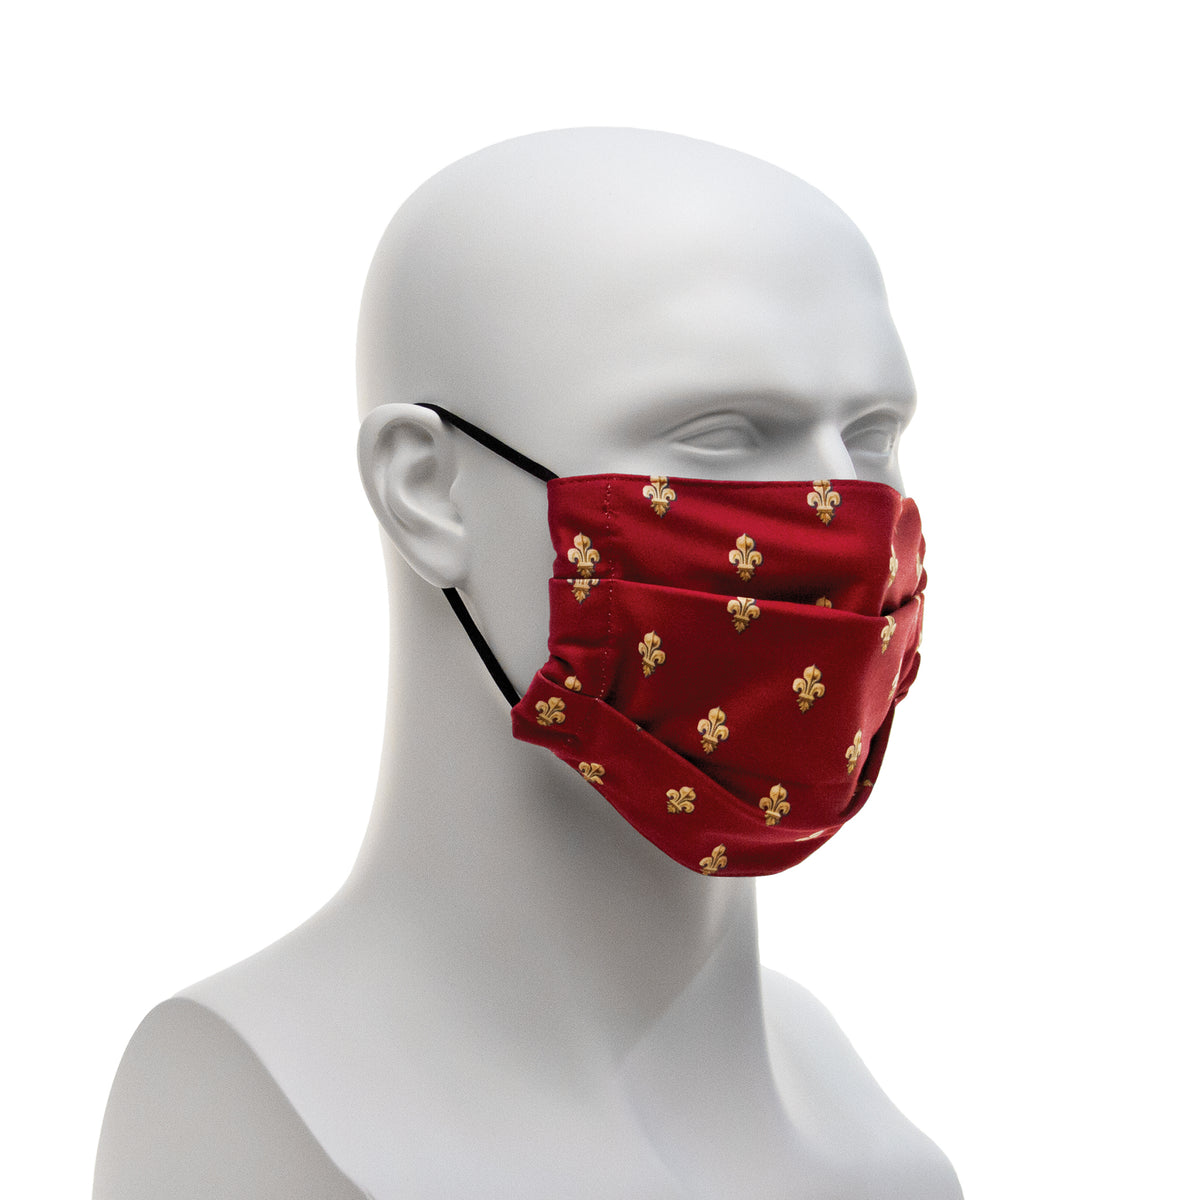 Cloth Face Covering - Maroon Fleur-de-lis Pattern